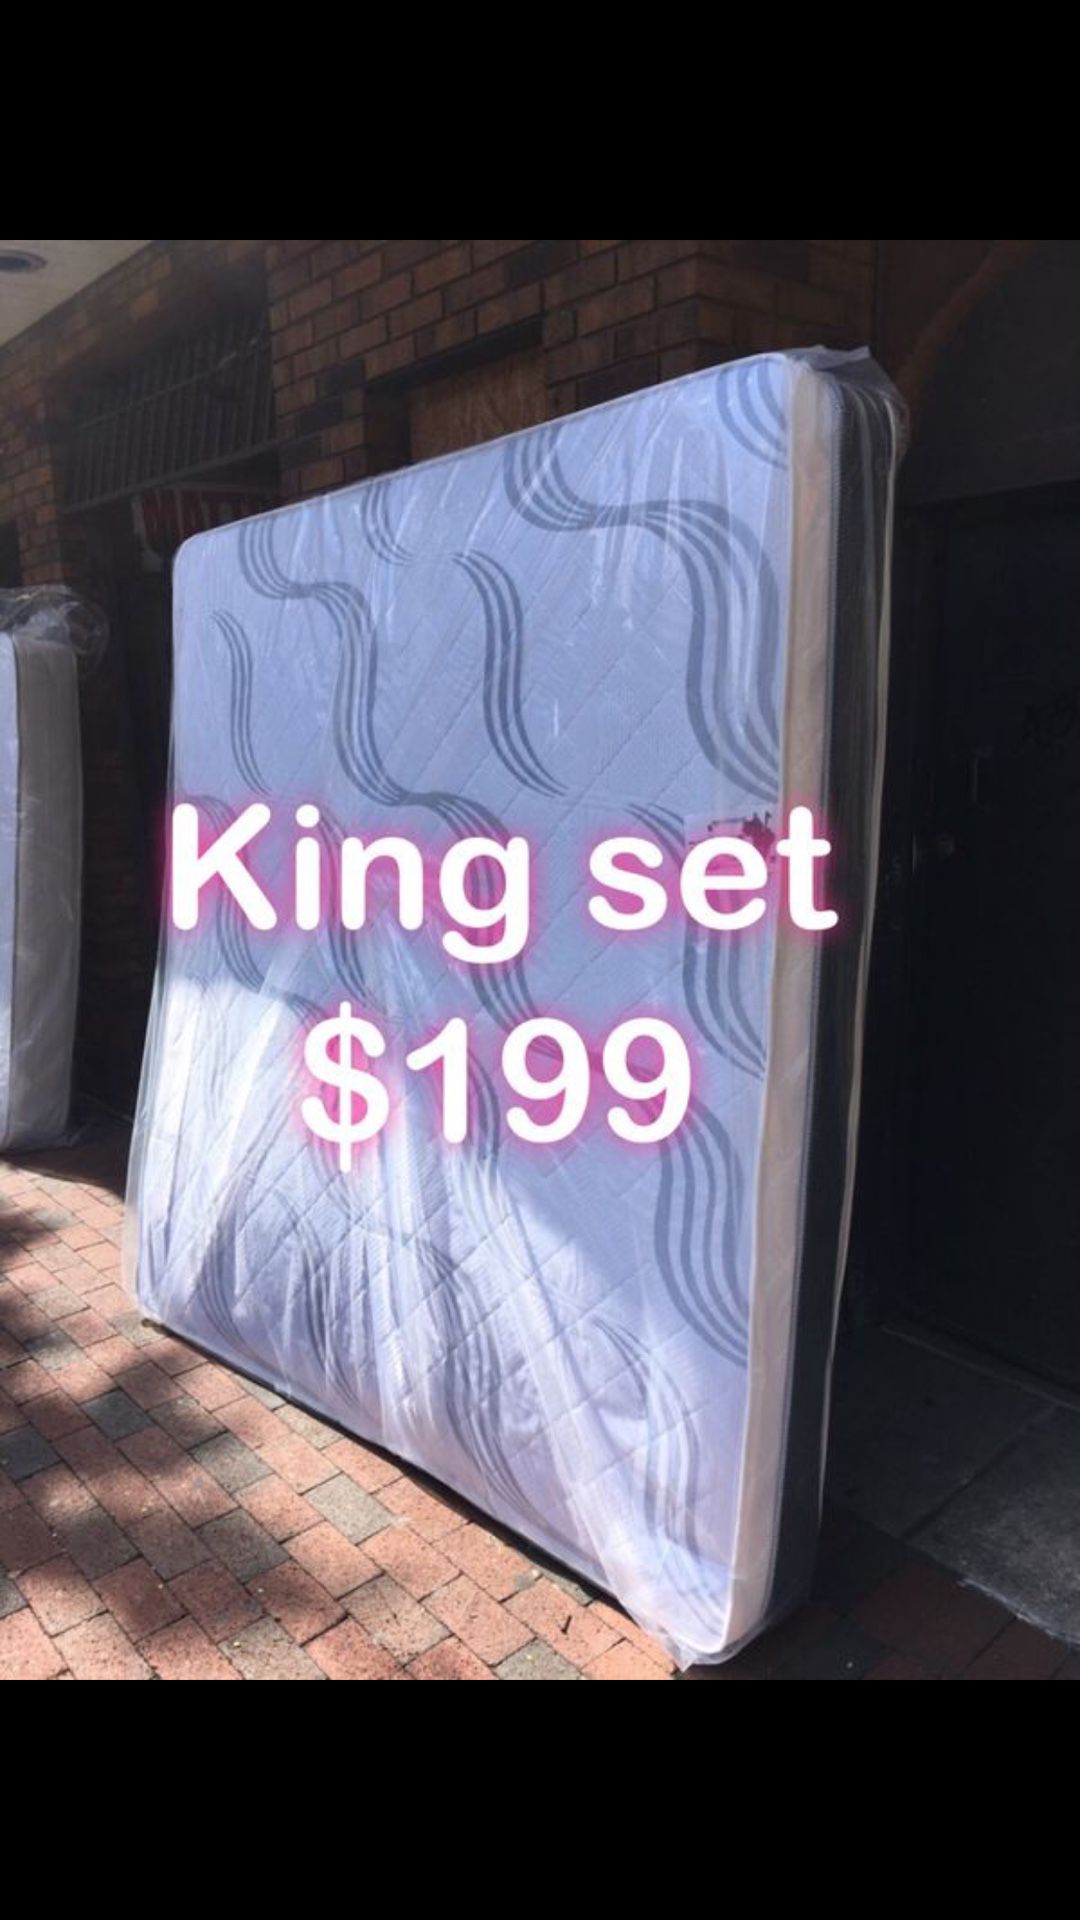 King set $199